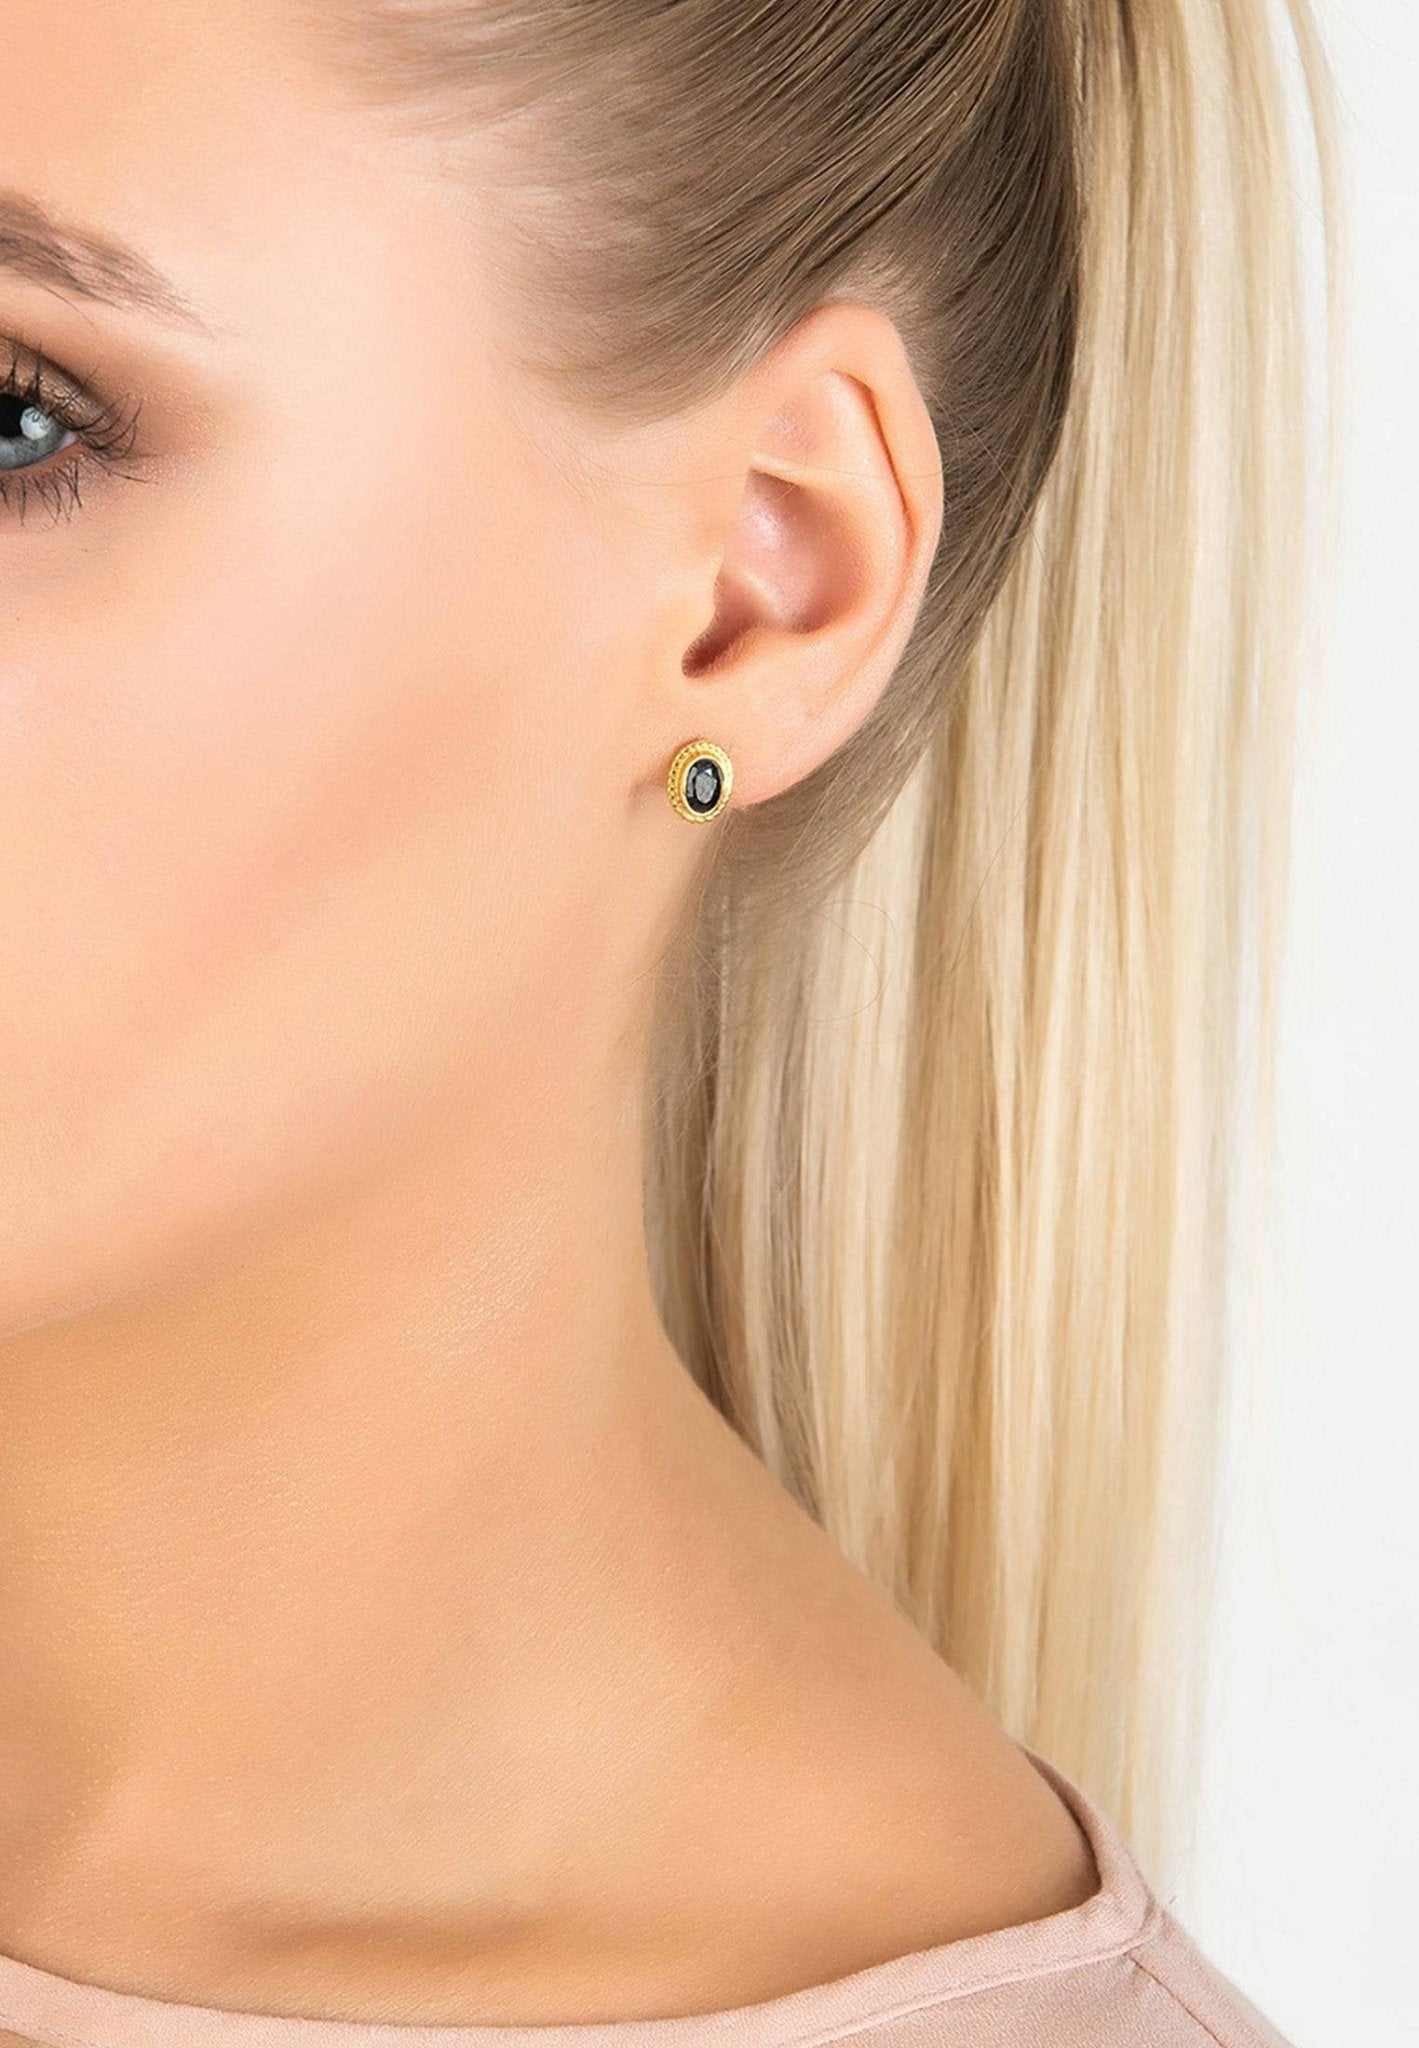 Birthstone Gold Gemstone Stud Earring September Sapphire - LATELITA Earrings